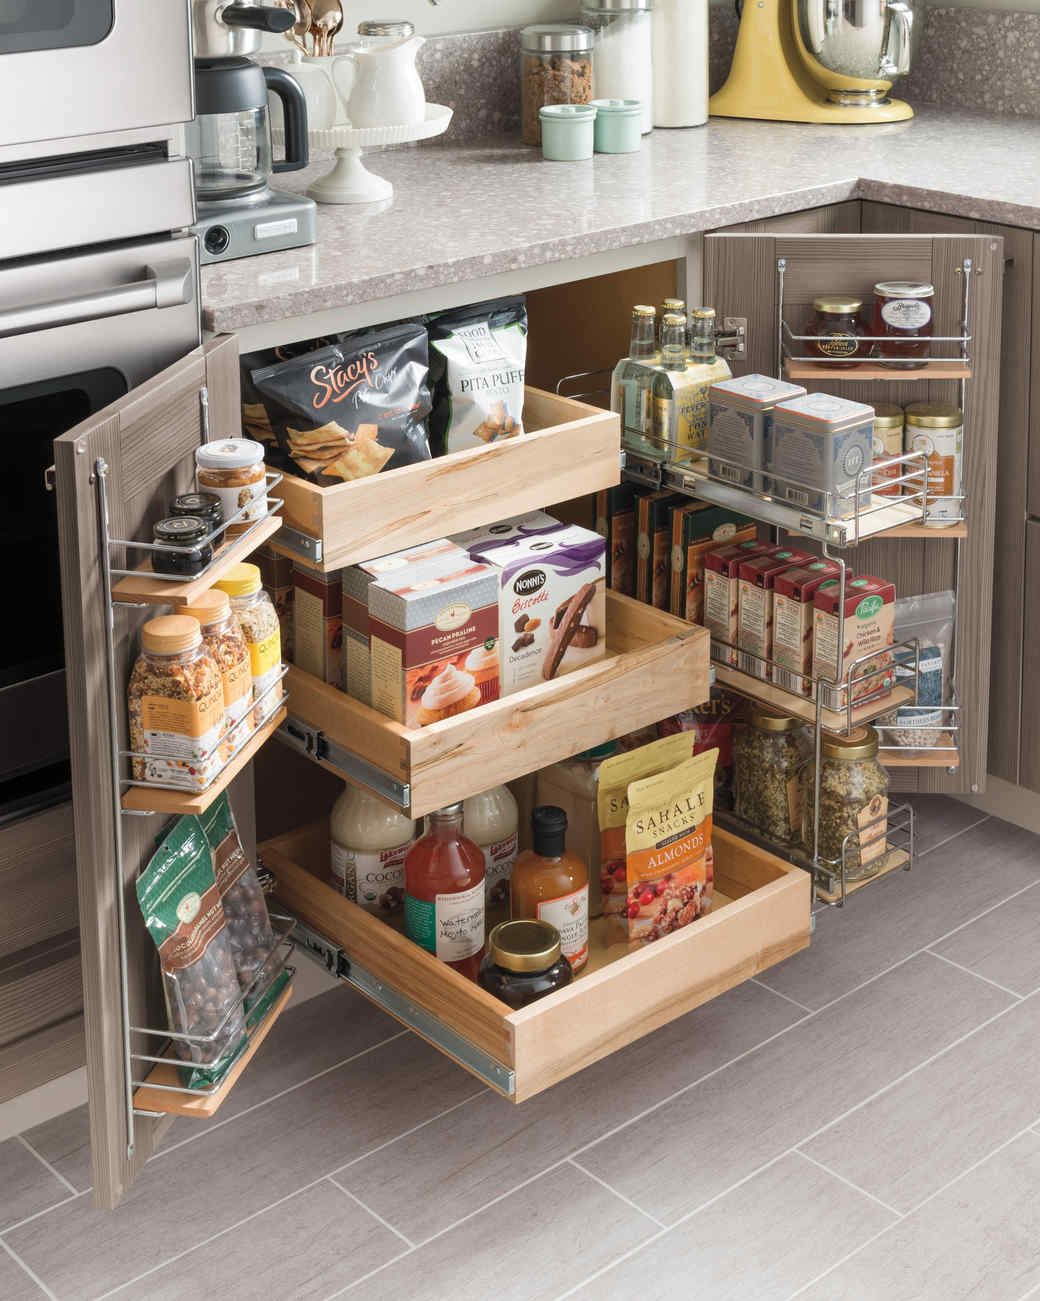 Small kitchen and storage organization ideas 1 1.jpg